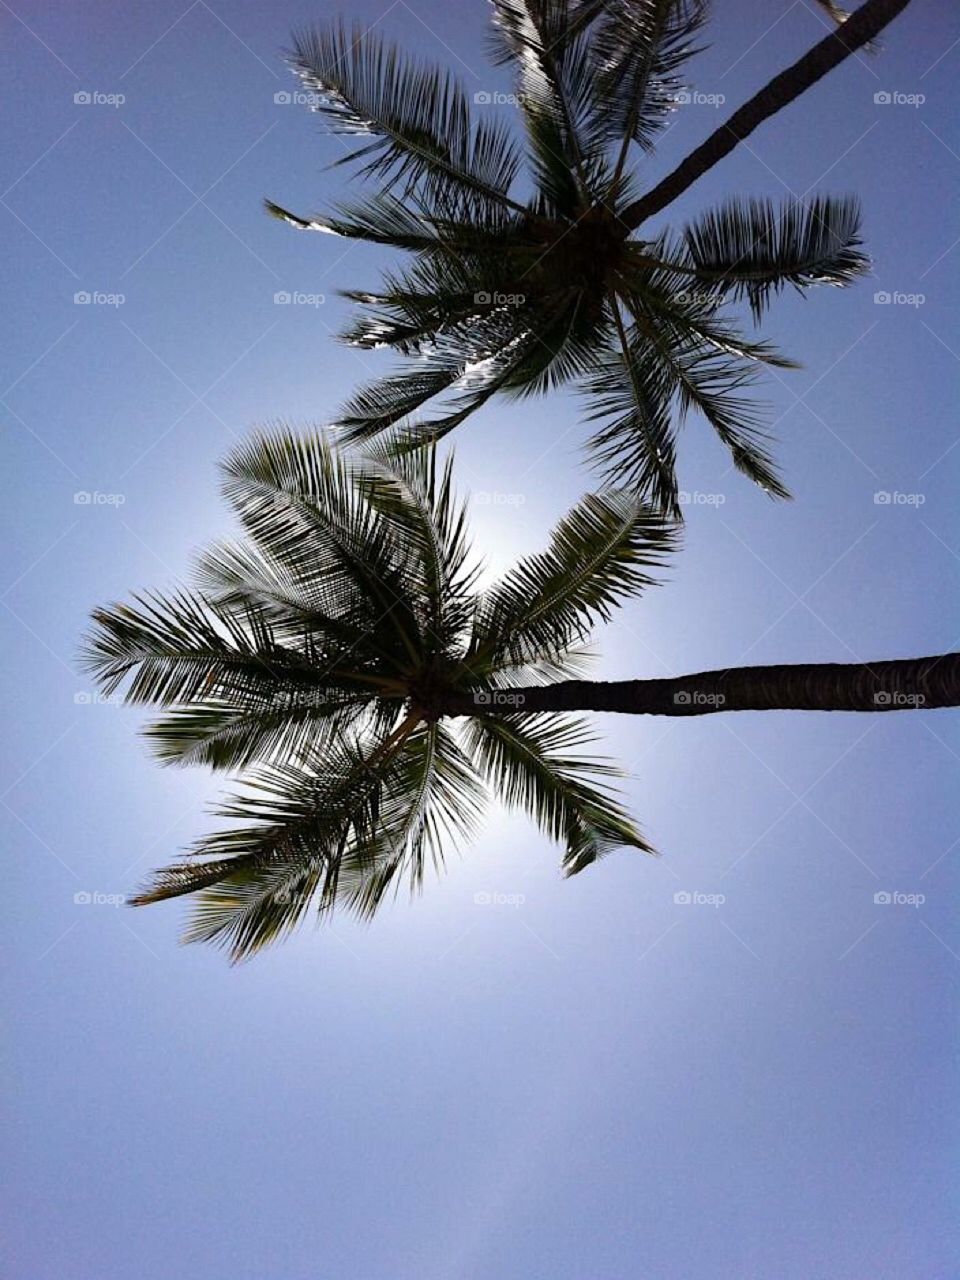 Under the Maui palms near the black sands beach.